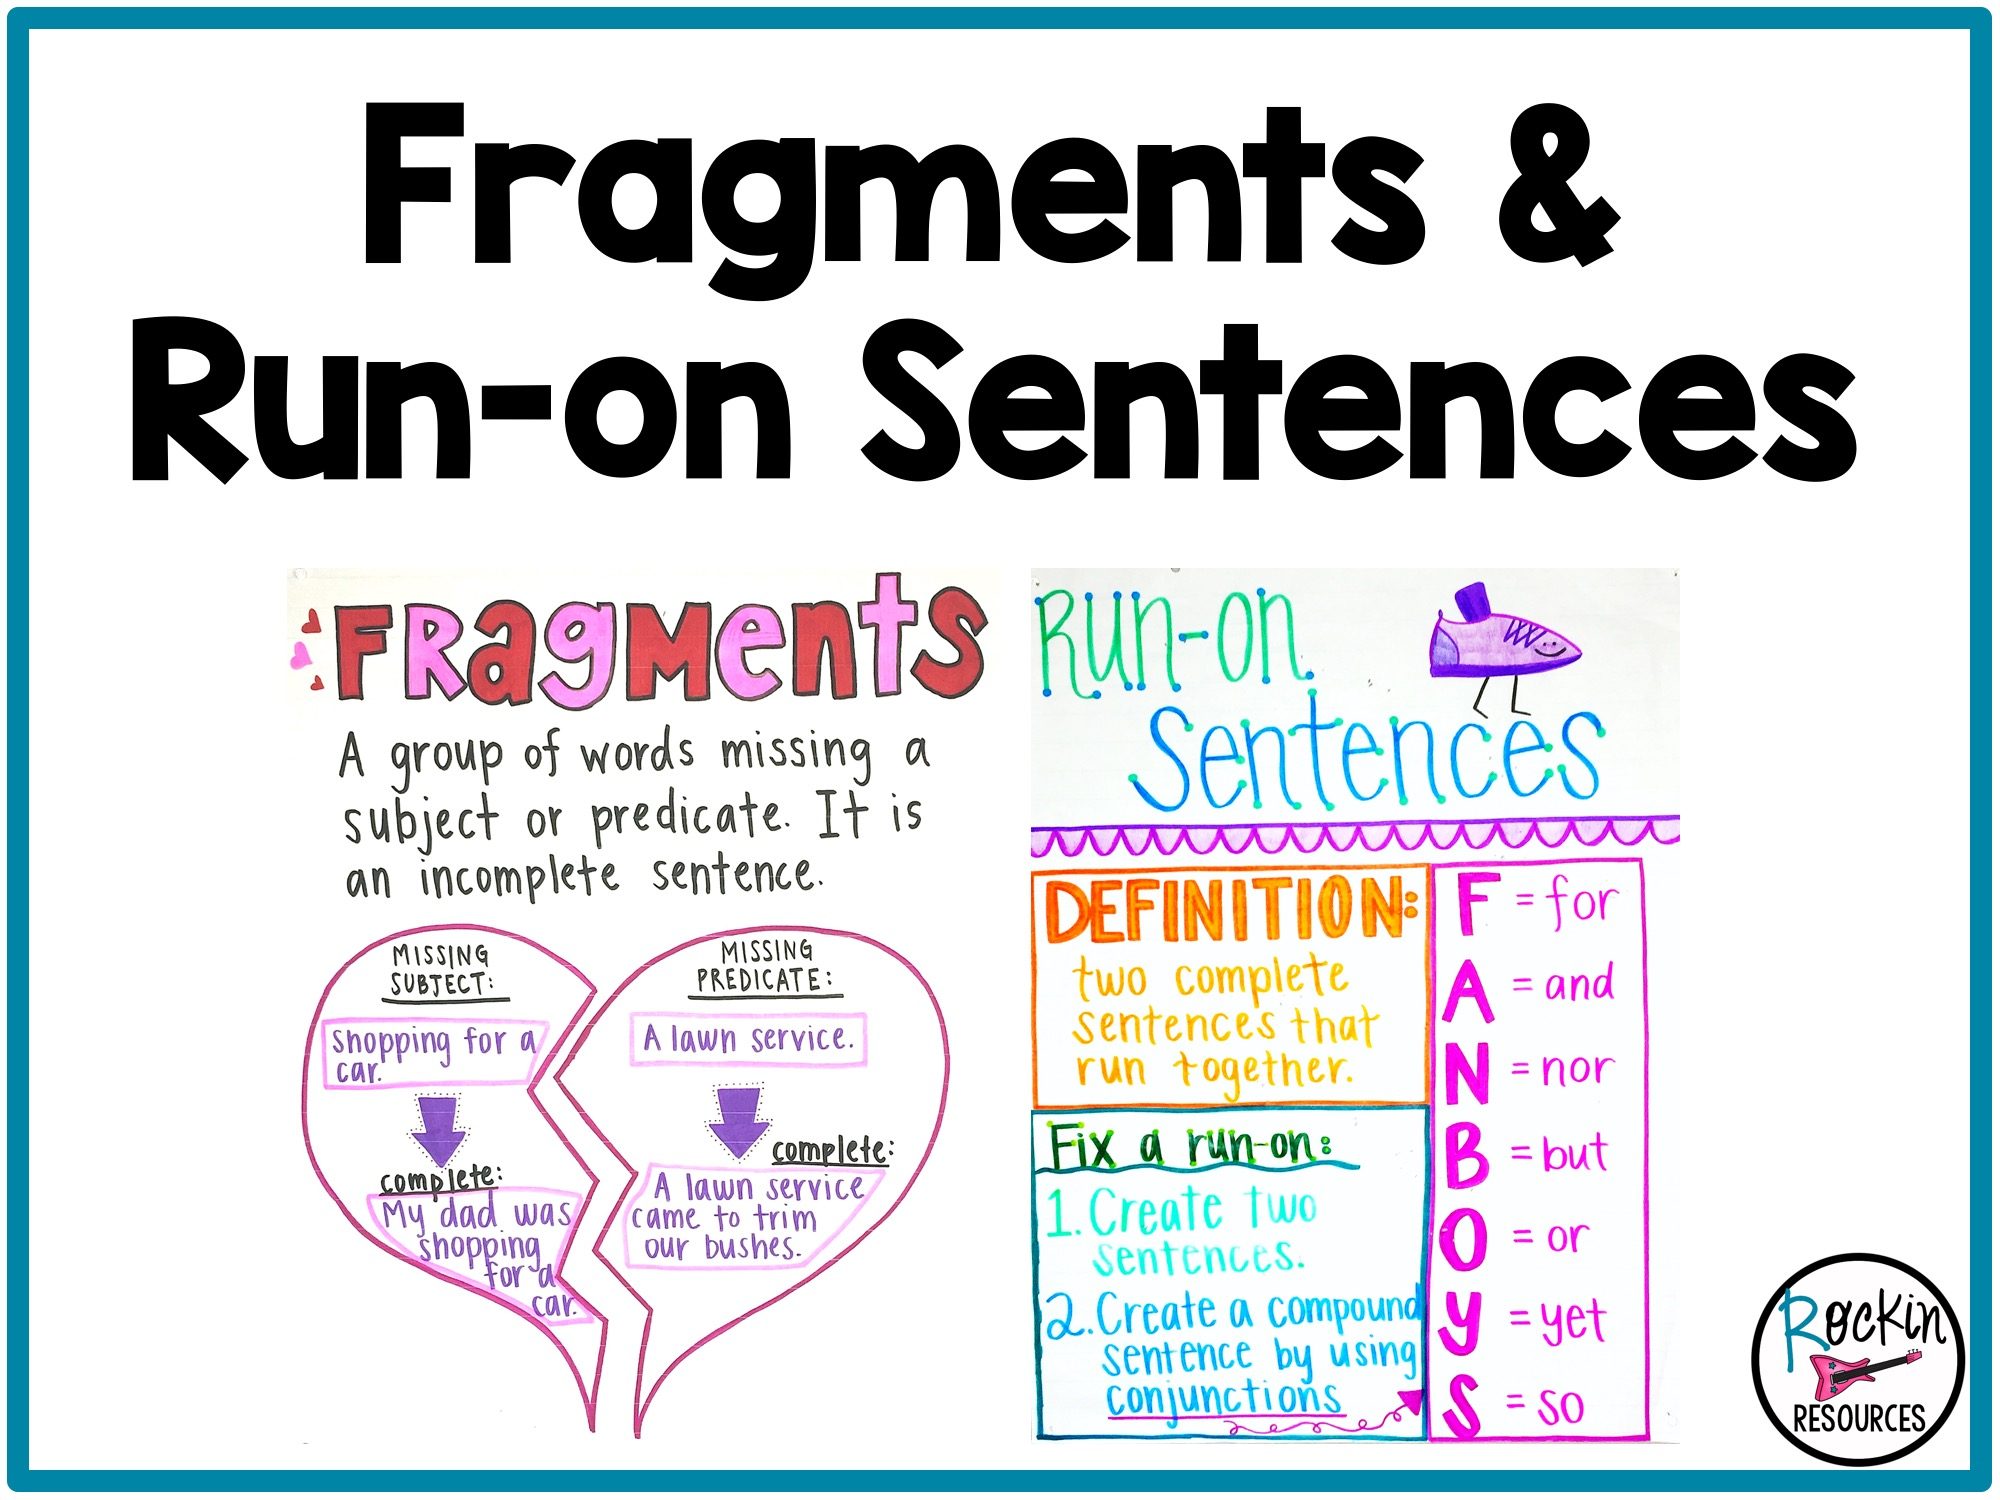 writing-mini-lesson-4-run-on-sentences-rockin-resources